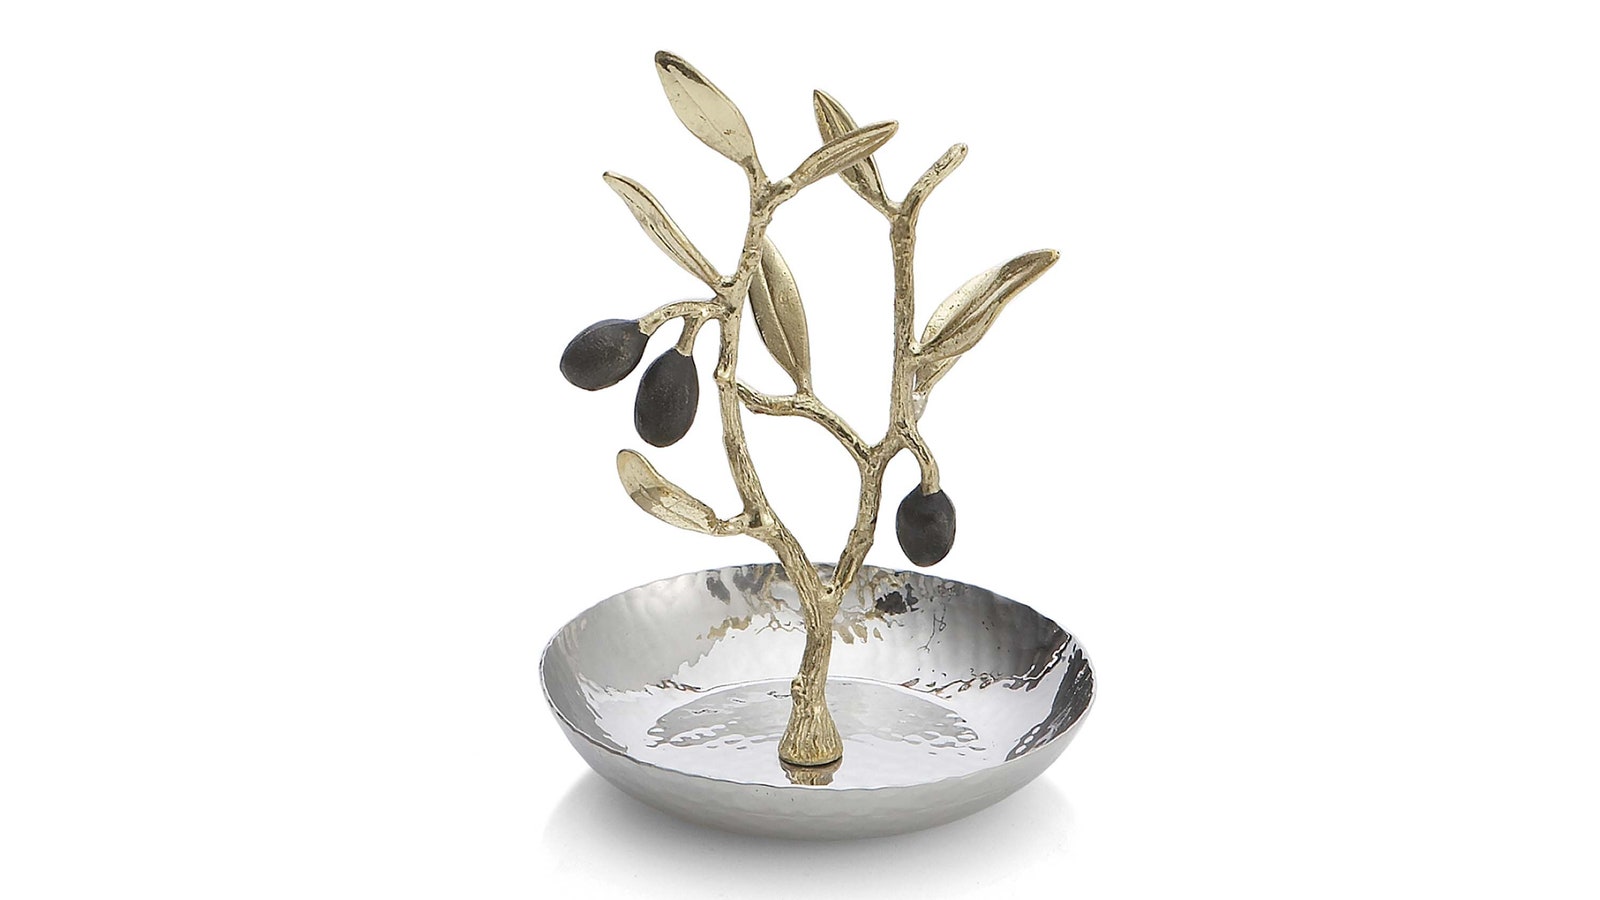 Держатель для колец “Золотая оливковая ветвь” Michael Aram 10 690 руб.